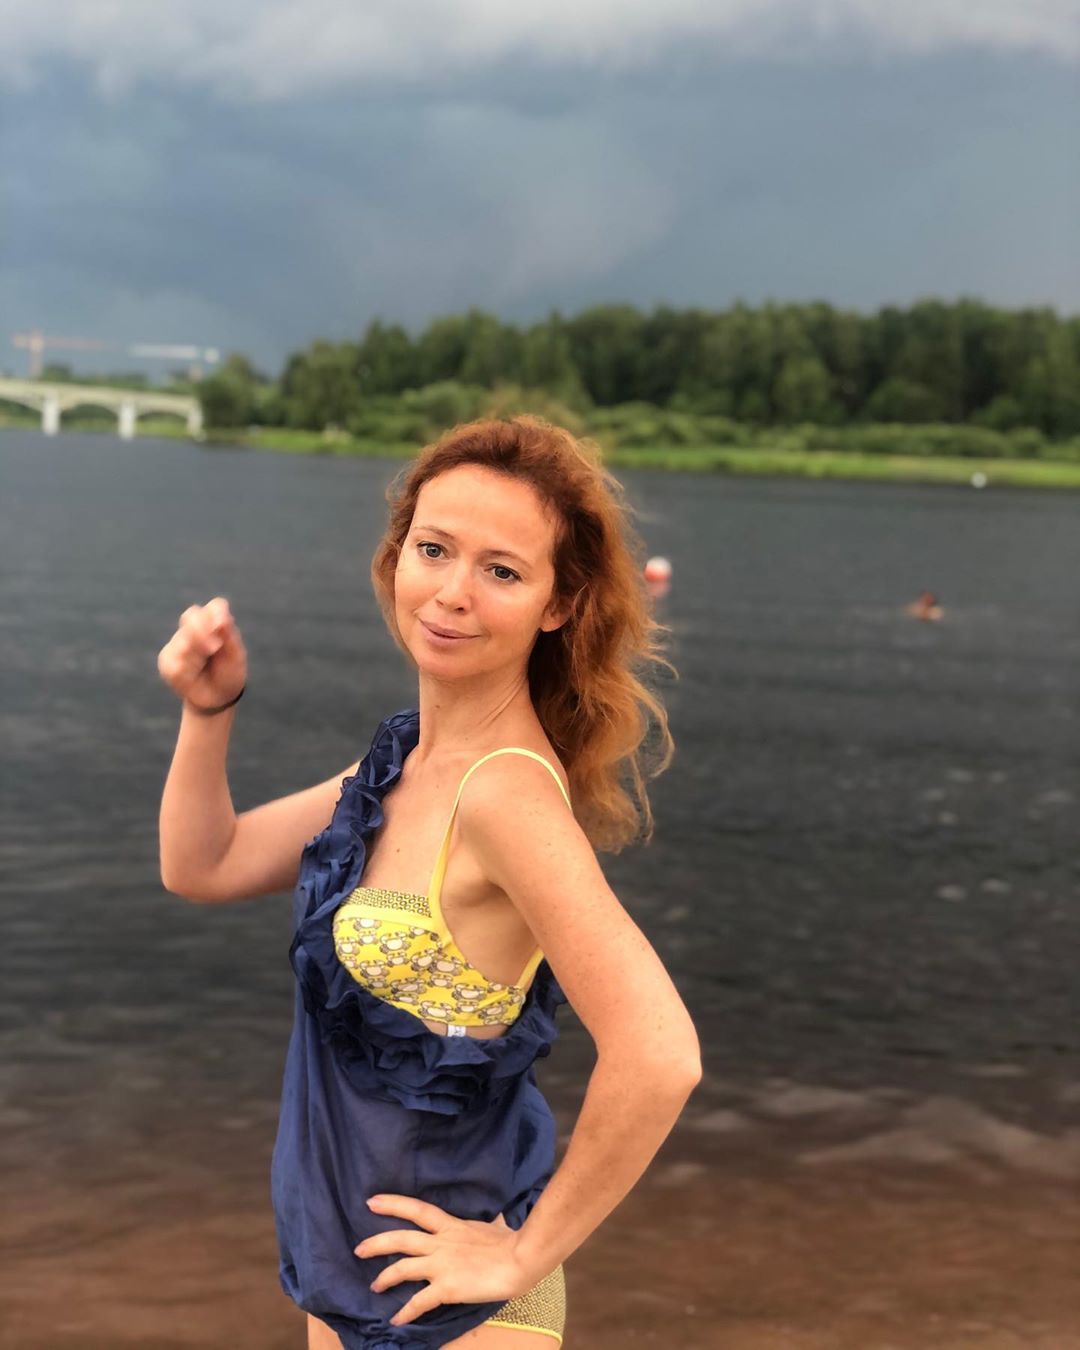 Елена Захарова - Какой прекрасный тёплый день,решили искупаться на речке Шоша,тучки сгущались и теперь гроза и ураган!! Как всегда повезло 😊 А какая у вас сегодня погода? #лето #гроза #дачники